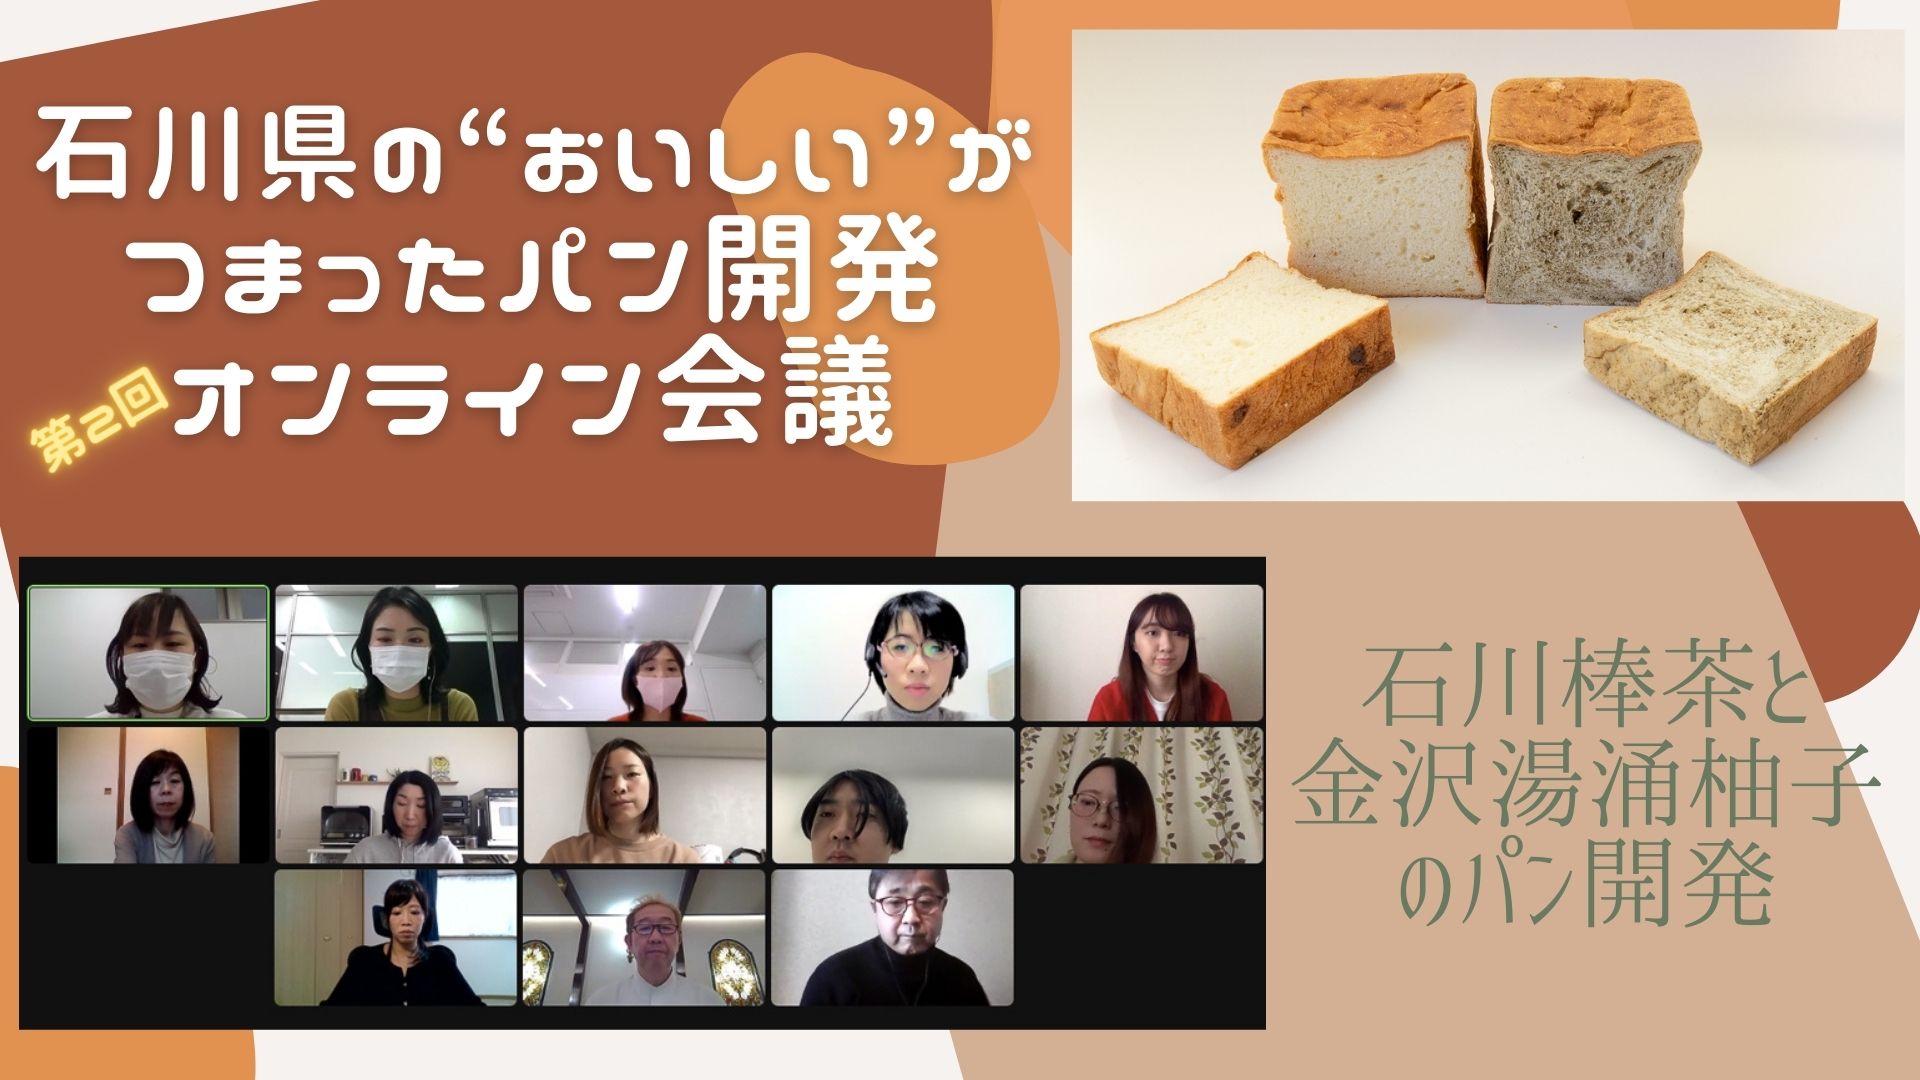 2度目の試作は半分順調で半分混迷？「石川県の“おいしい”がつまったパン開発」オンライン会議 第2回レポート